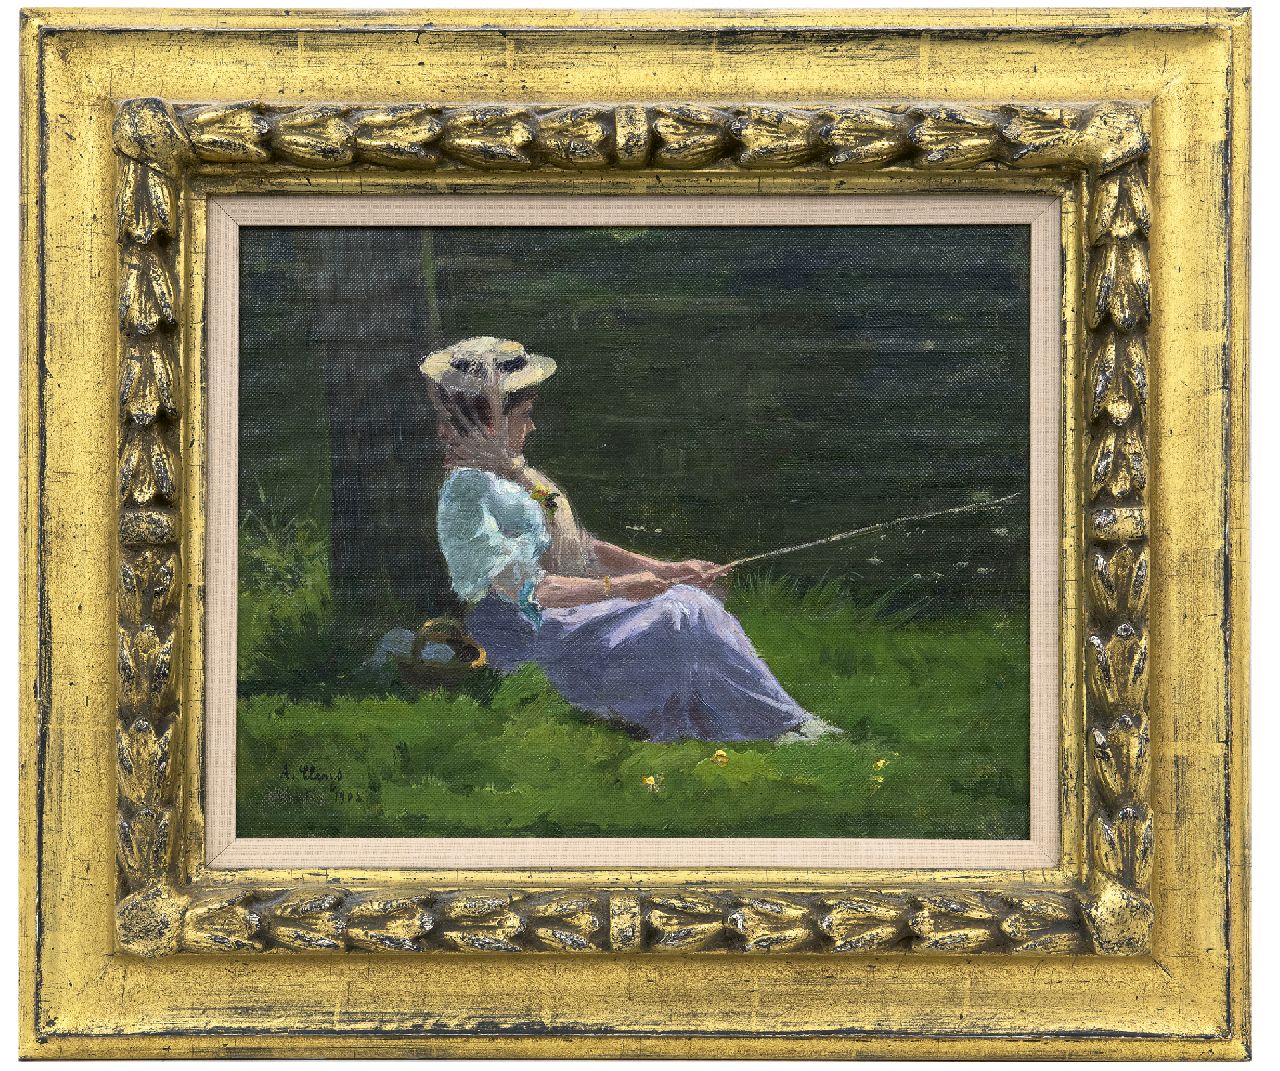 Clarys A.  | Alexandre Clarys | Schilderijen te koop aangeboden | Zonnige middag aan de waterkant, olieverf op doek op paneel 24,2 x 30,9 cm, gesigneerd linksonder en gedateerd 1908